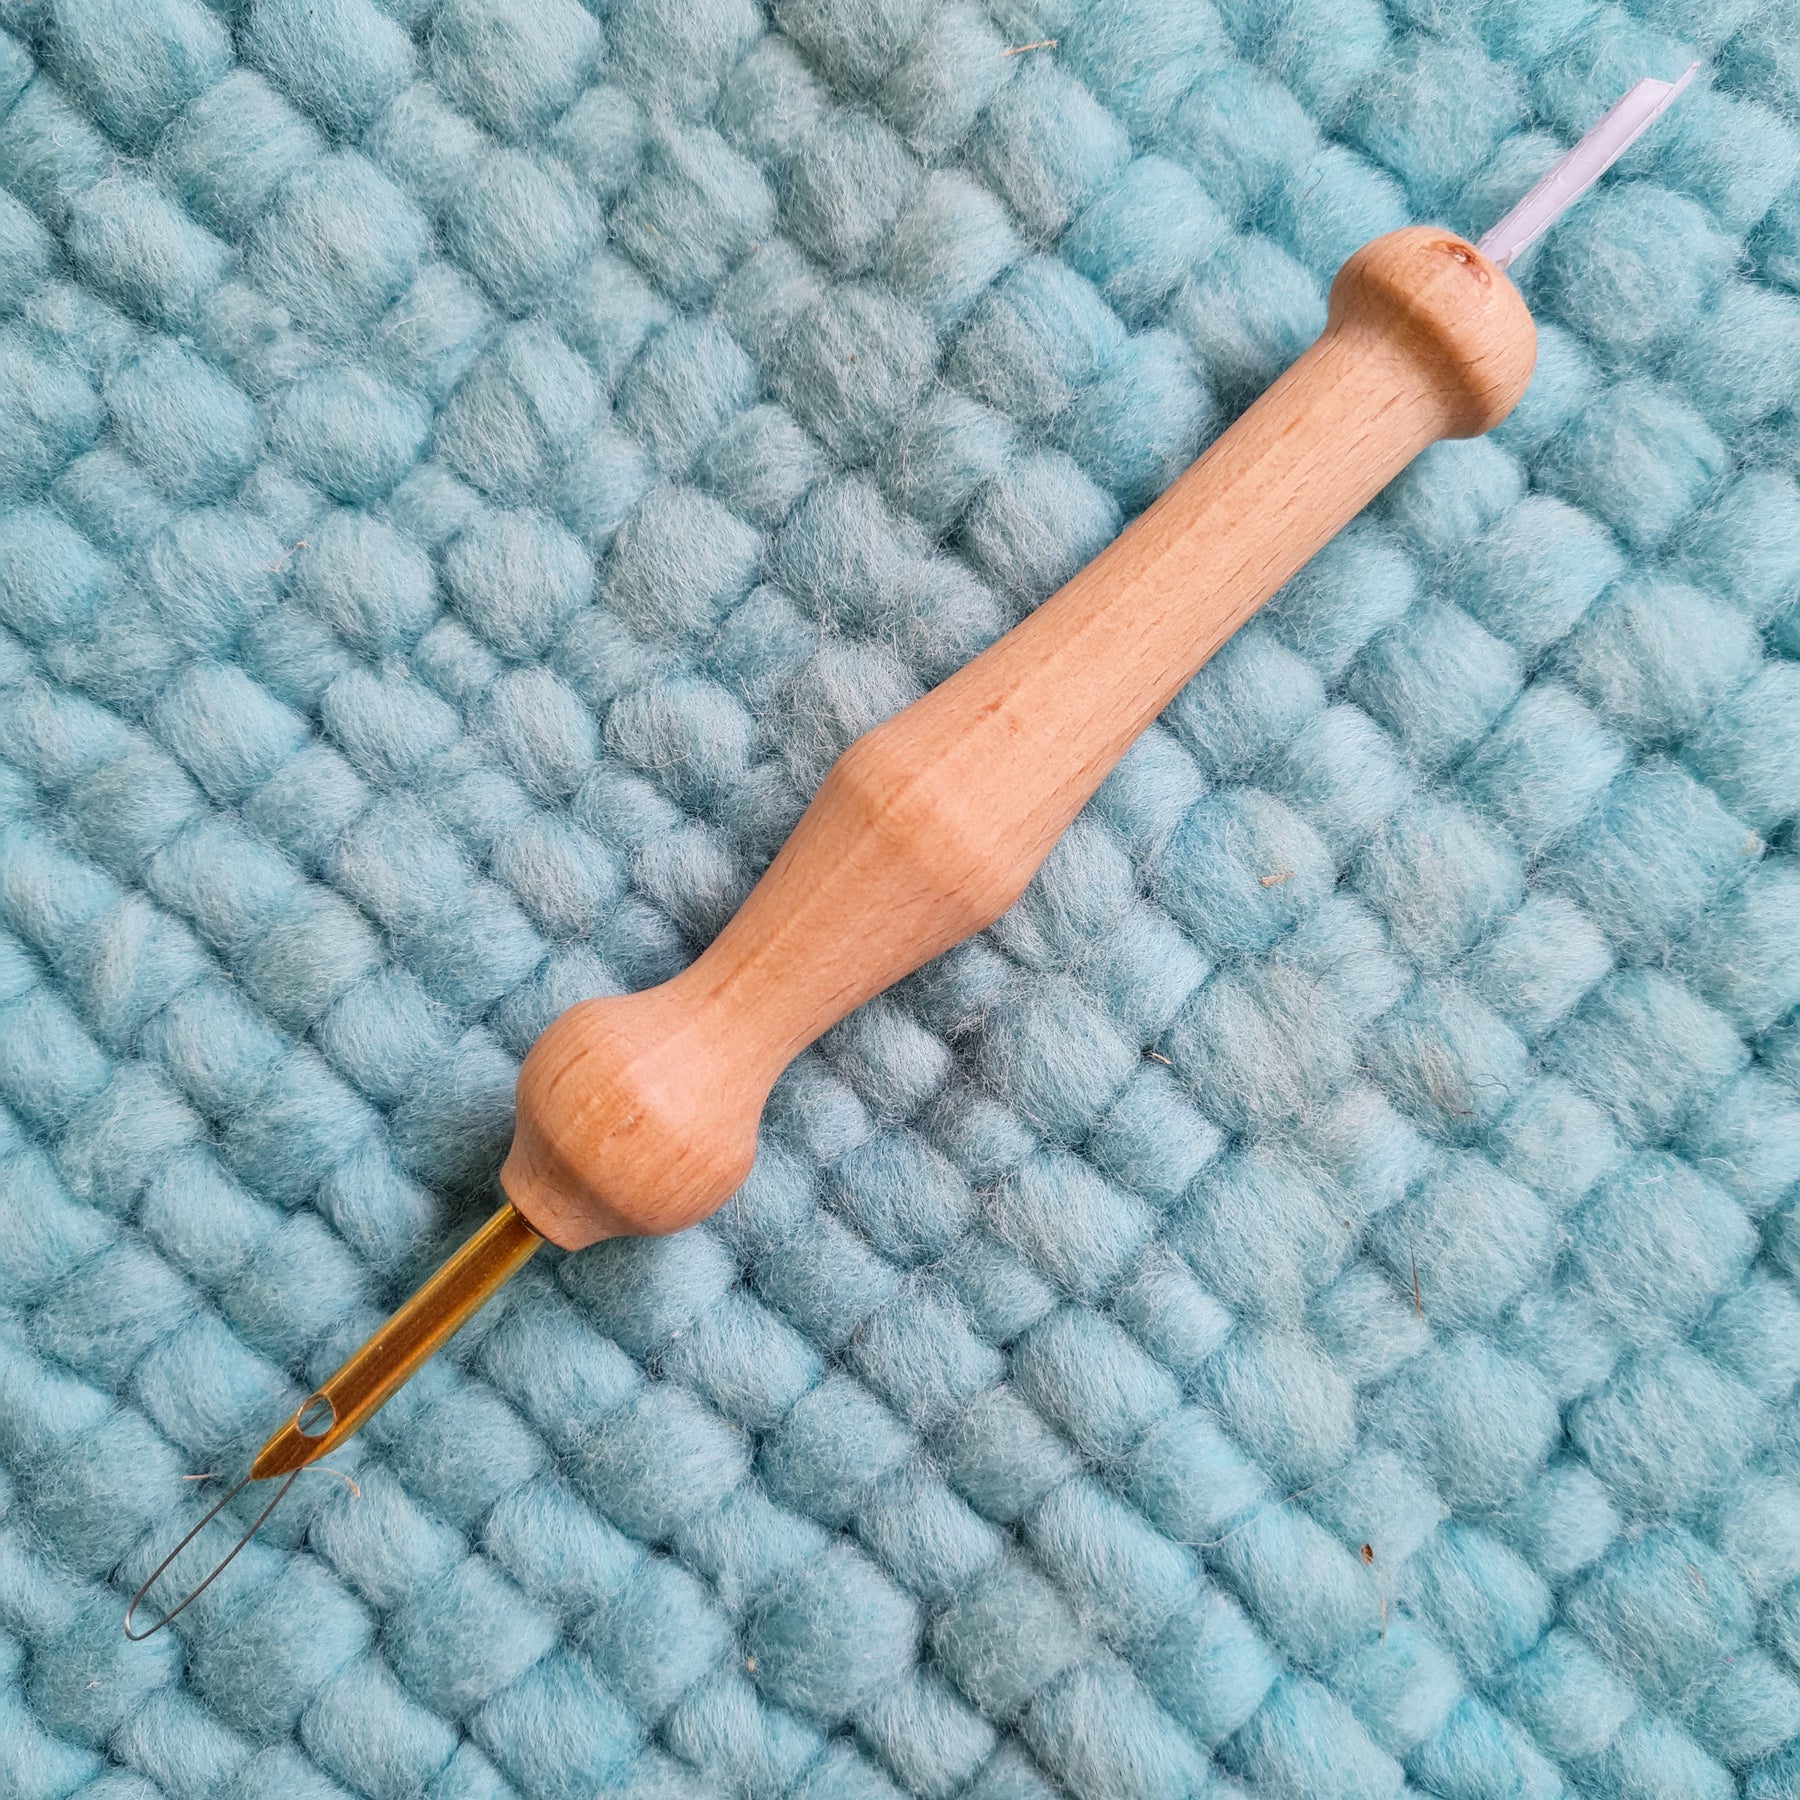 3 errores frecuentes con la aguja mágica de Punch Needle (y la solución  para pasar de principiante a experto) » Maison Penedès